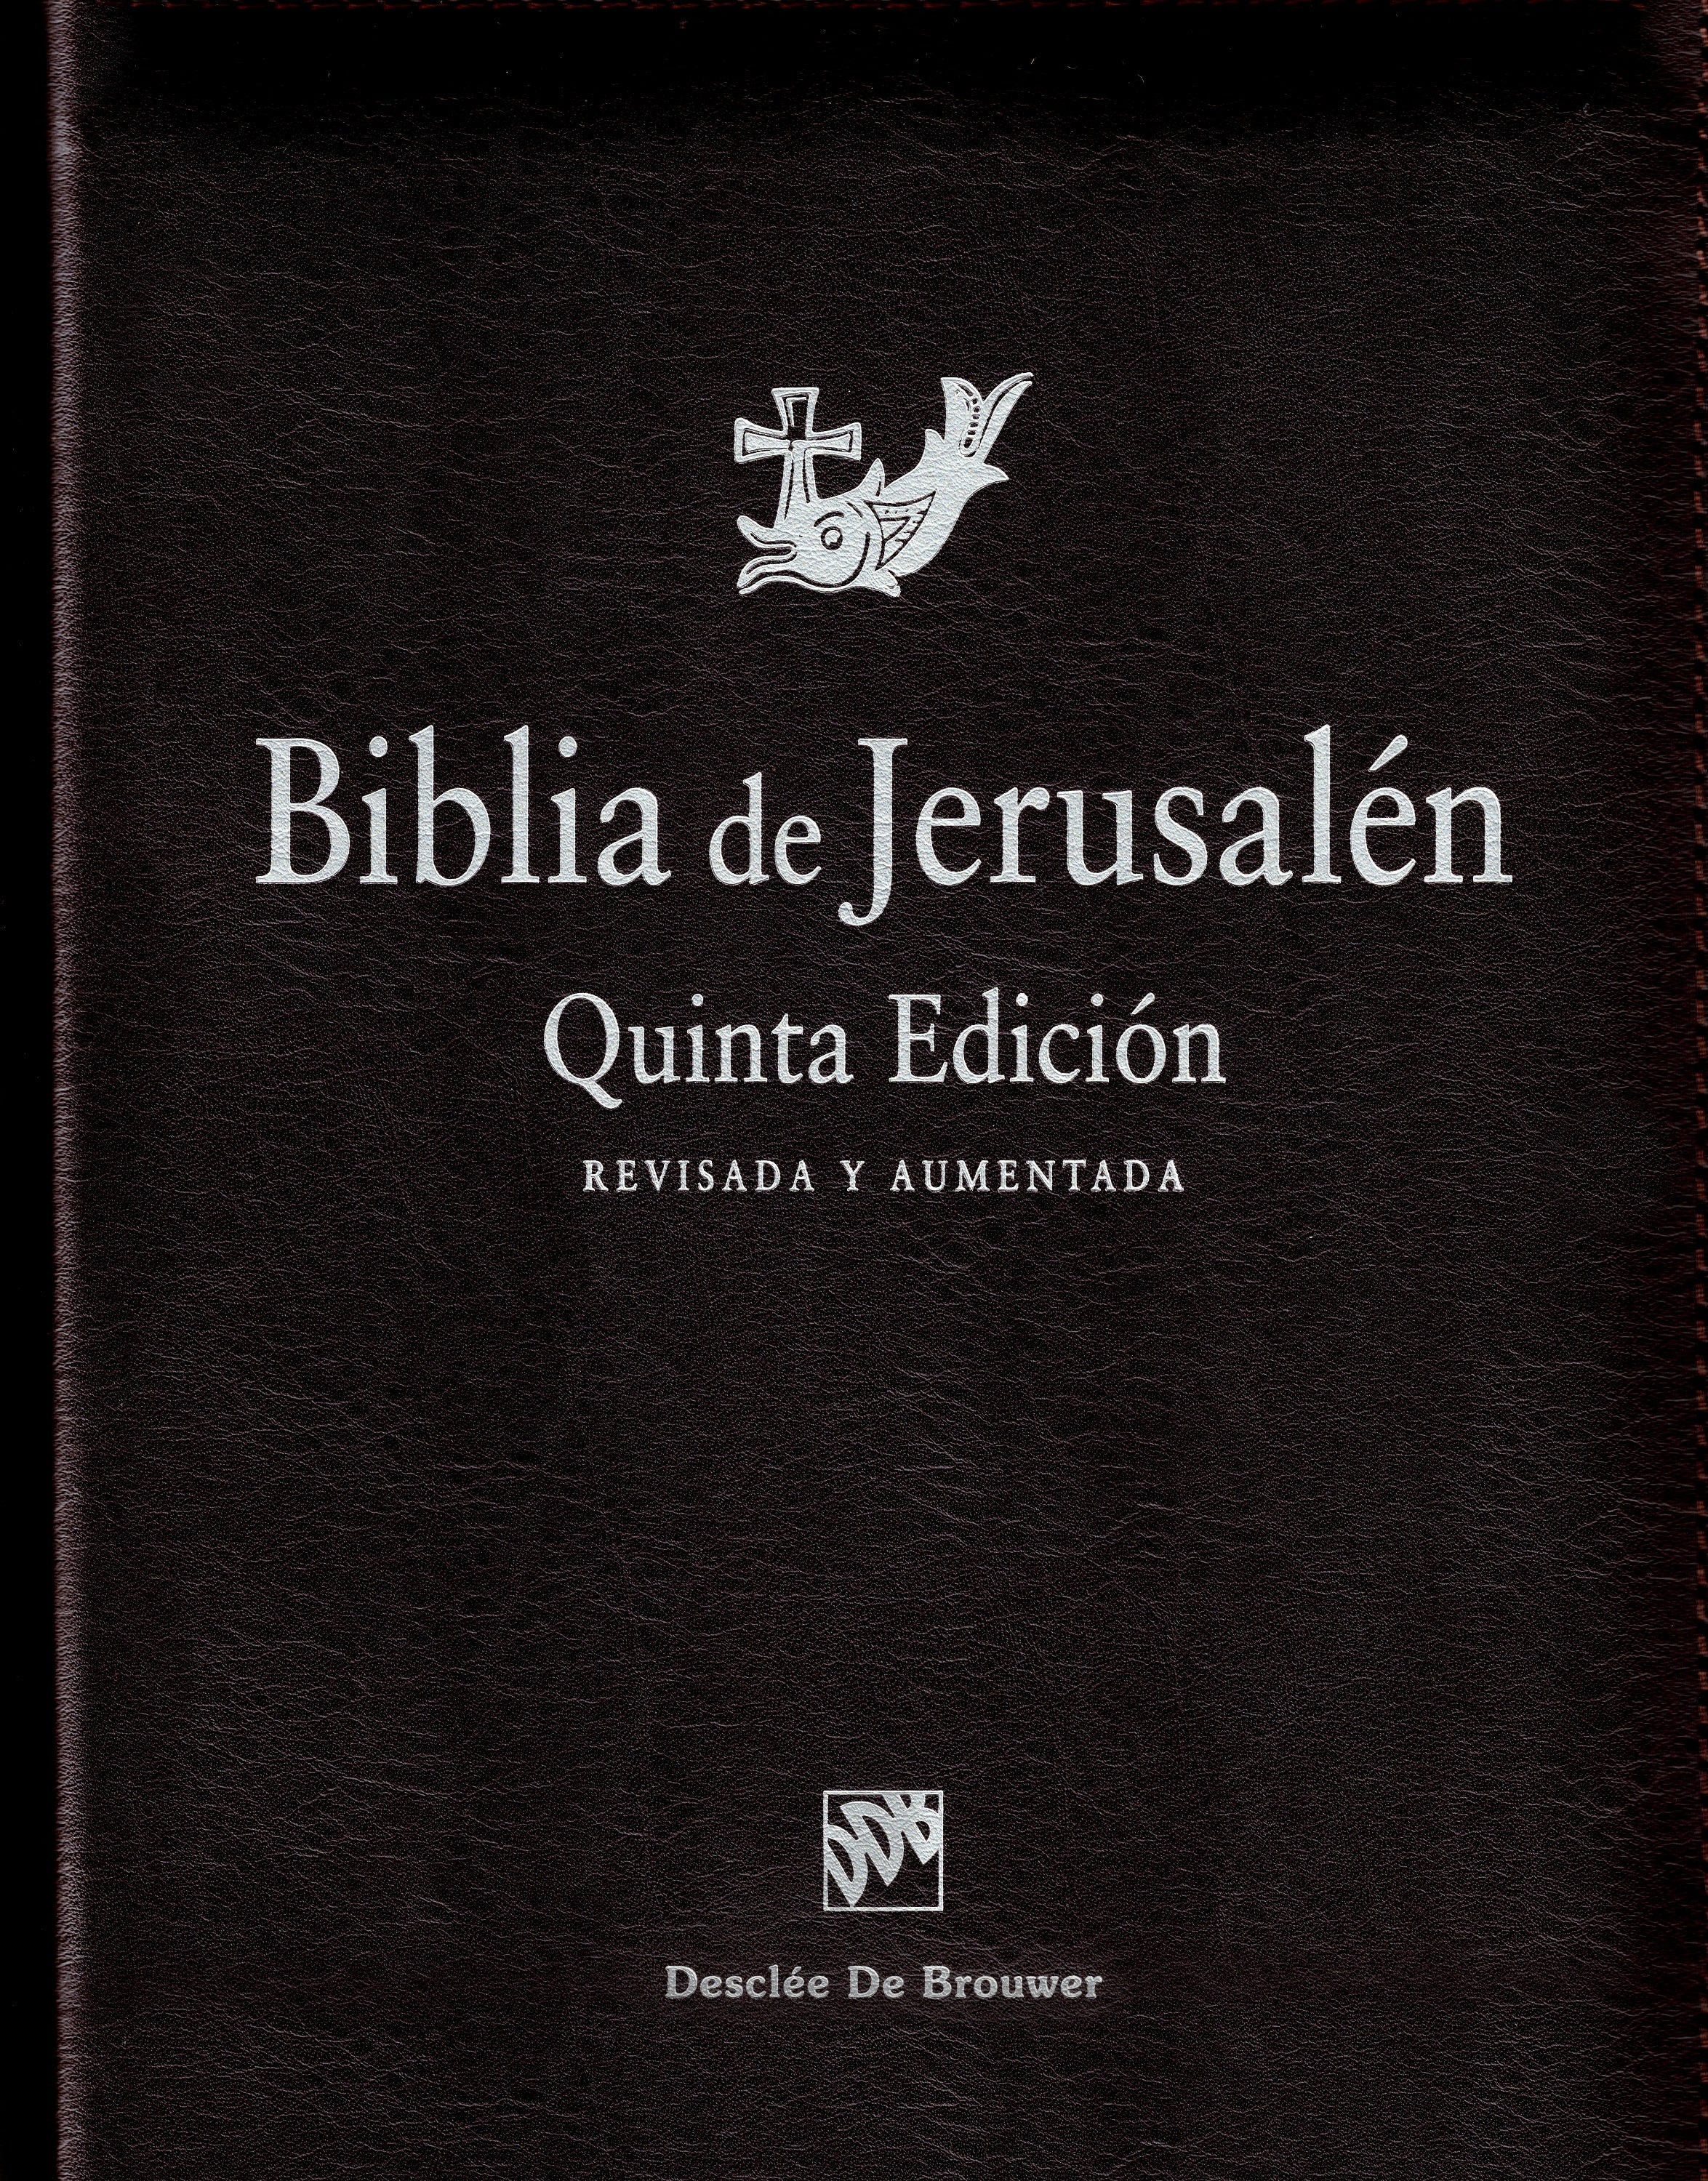 Biblia de Jerusalén Quinta Edición Revisada y Aumentada con cremallera